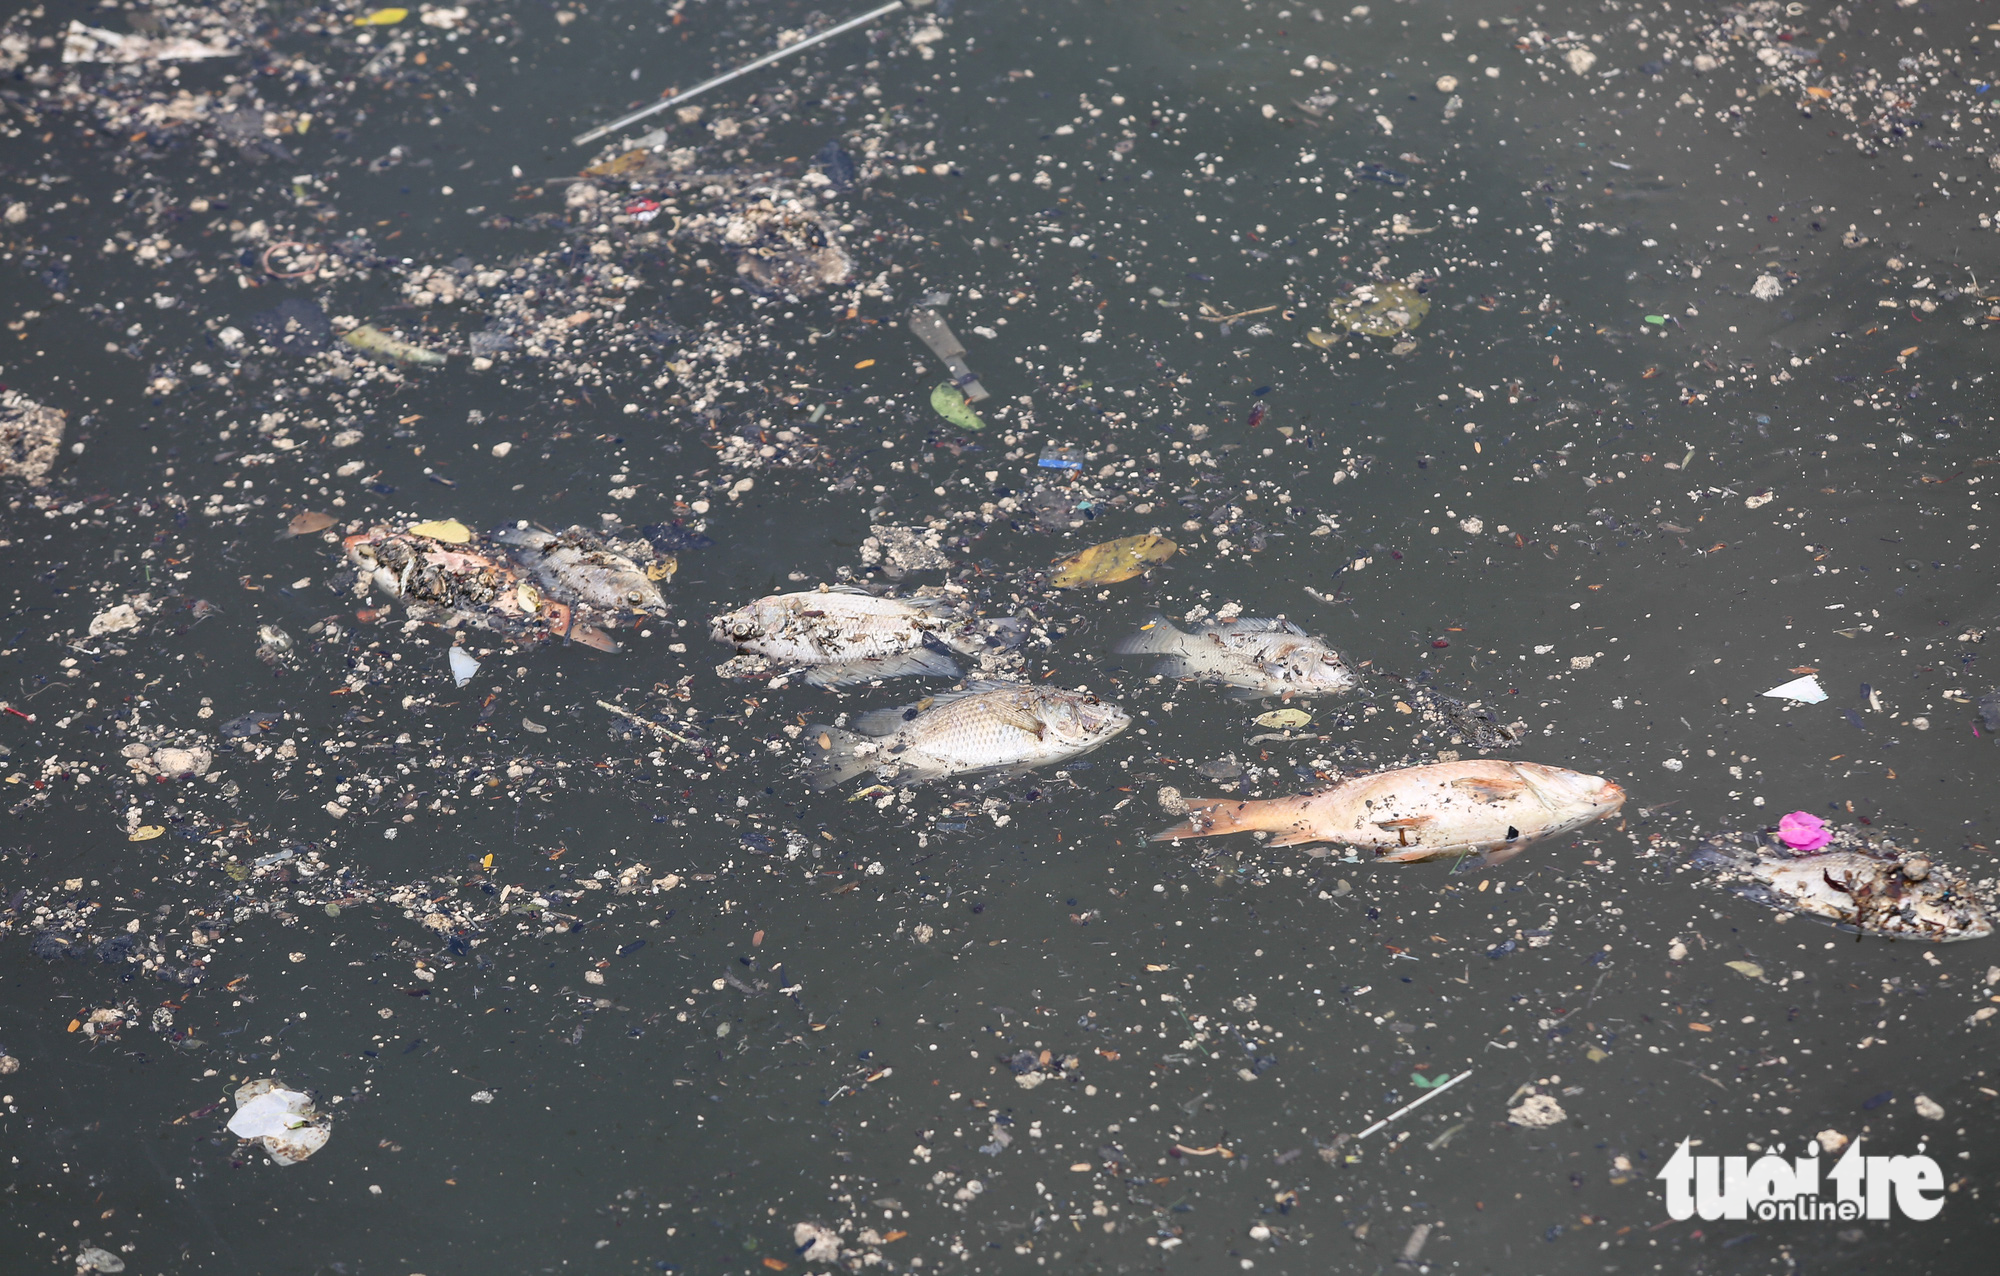 Sau mưa, cá chết, rác nổi lềnh bềnh trên kênh Nhiêu Lộc - Thị Nghè - Ảnh 4.